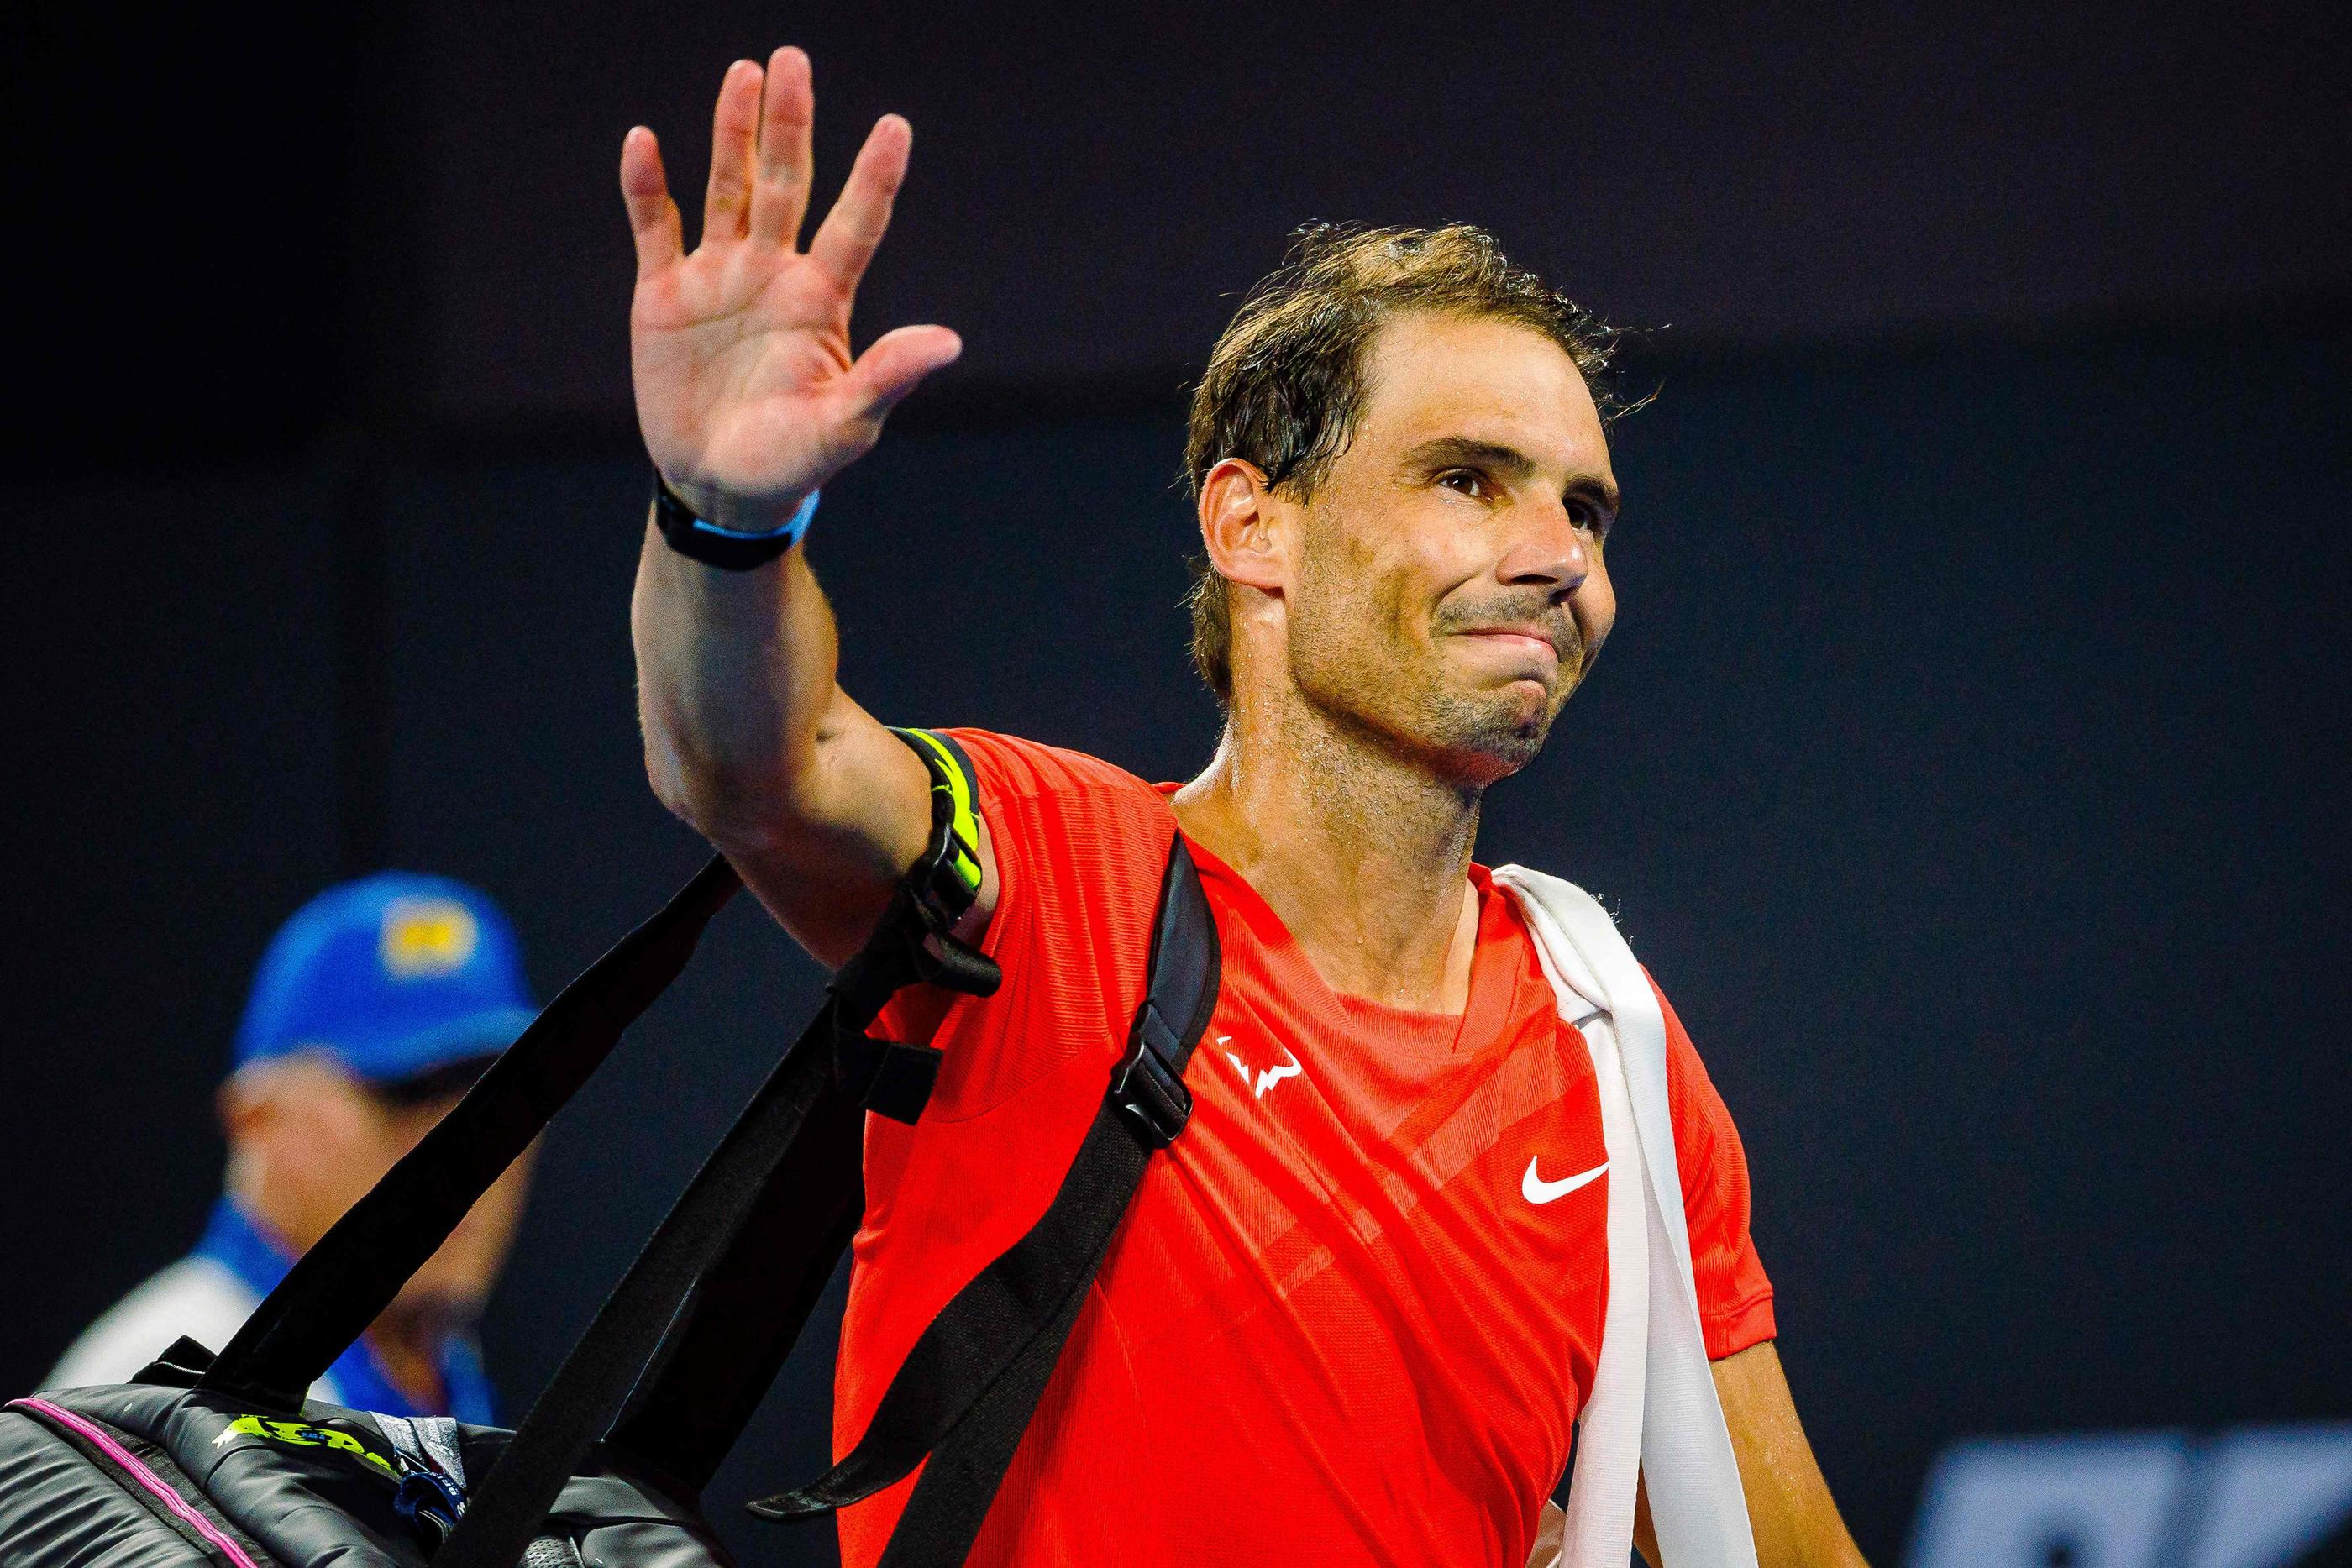 Le dernier match de Rafael Nadal remonte au 5 janvier à Brisbane et une défaite face à Jordan Thompson. Photo by Patrick HAMILTON / AFP